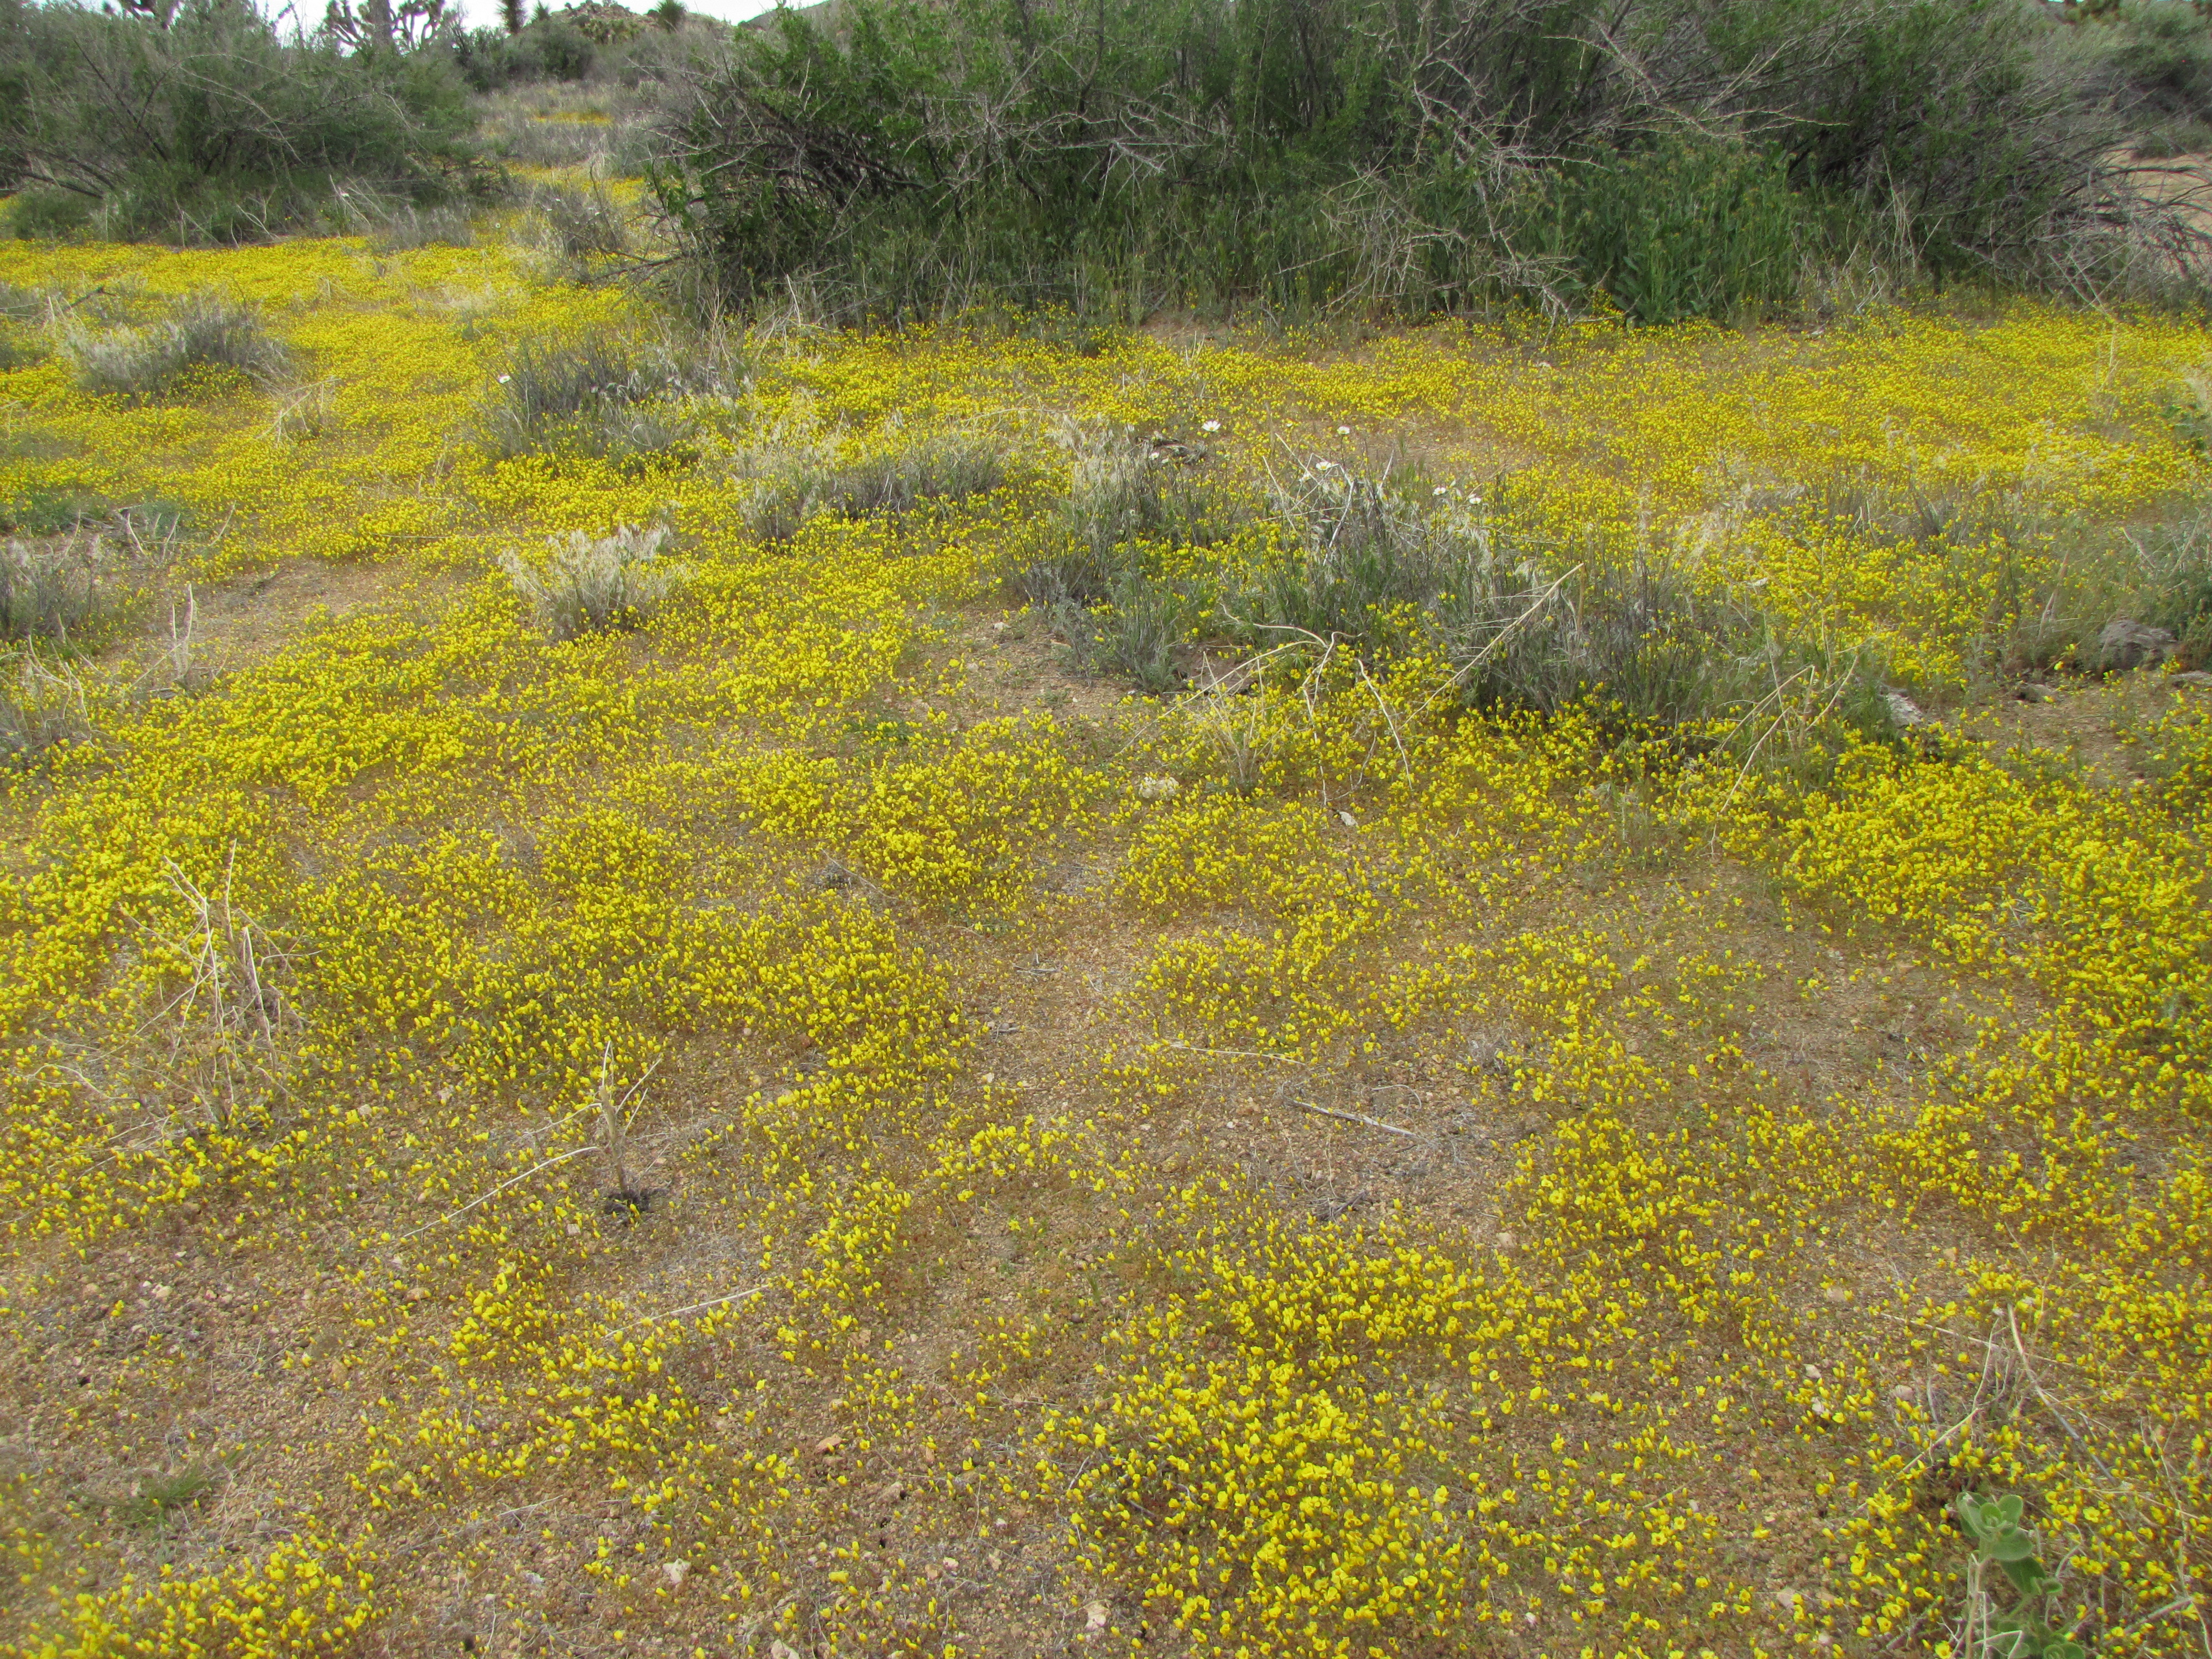 Yellow flowers nearly carpet the desert ground.